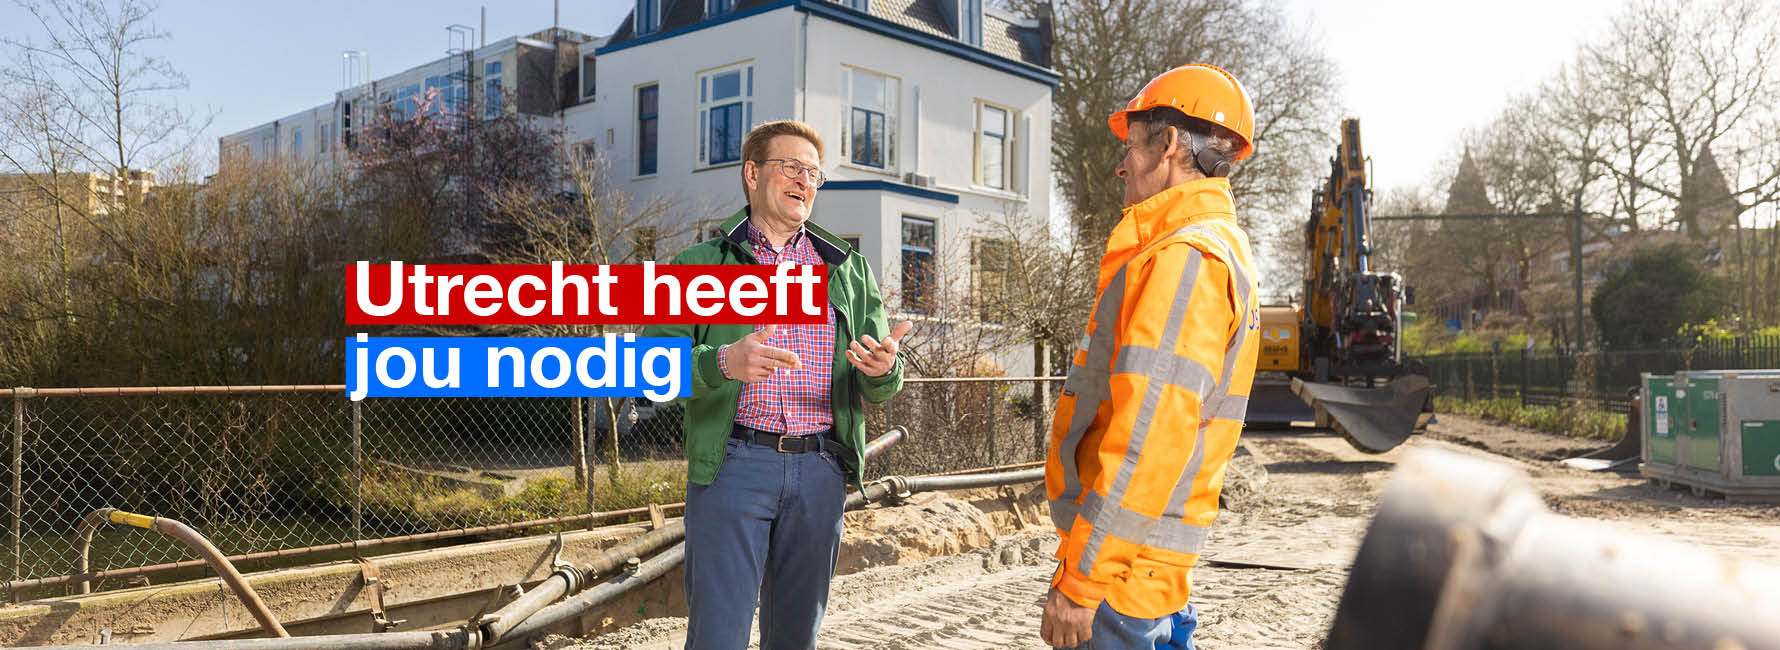 Twee mannen staan te praten op een bouwplaats. In beeld staat de tekst Utrecht heeft jou nodig.